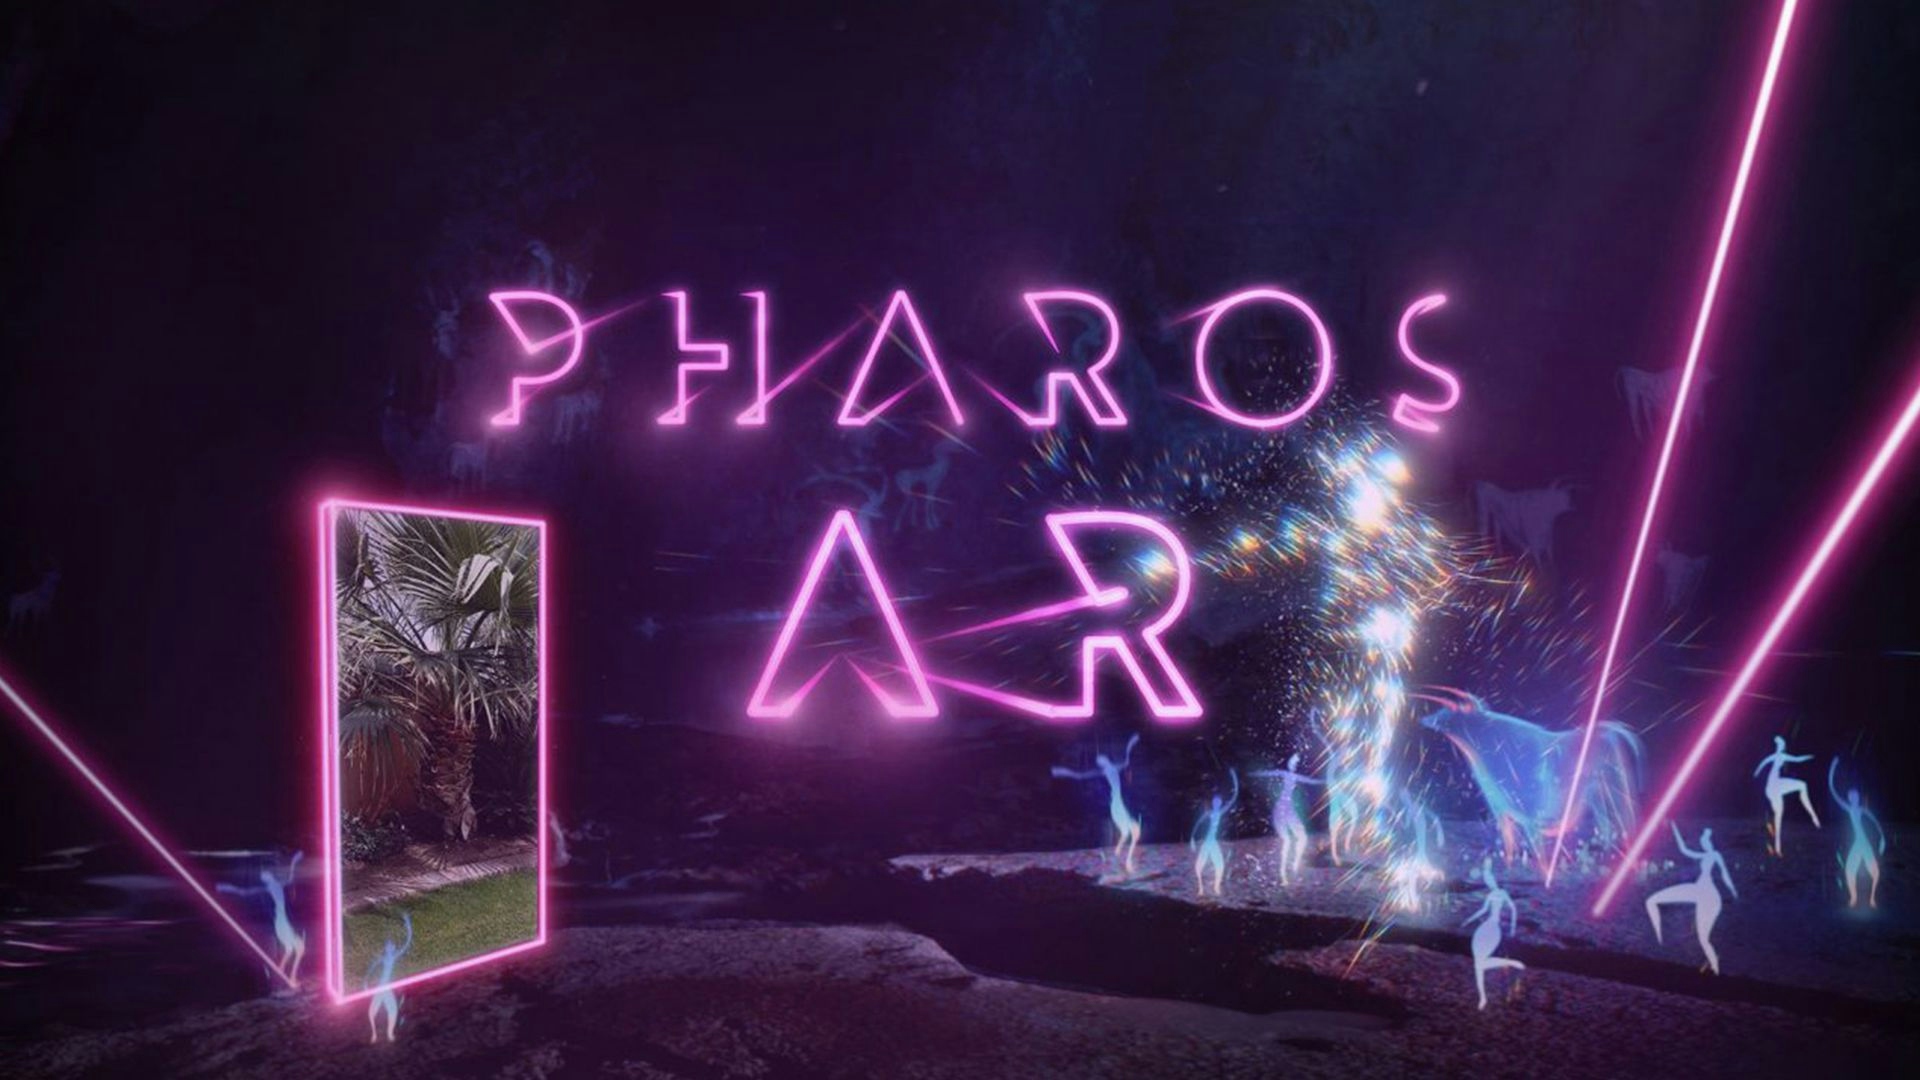 Pharos AR, feito com Unity